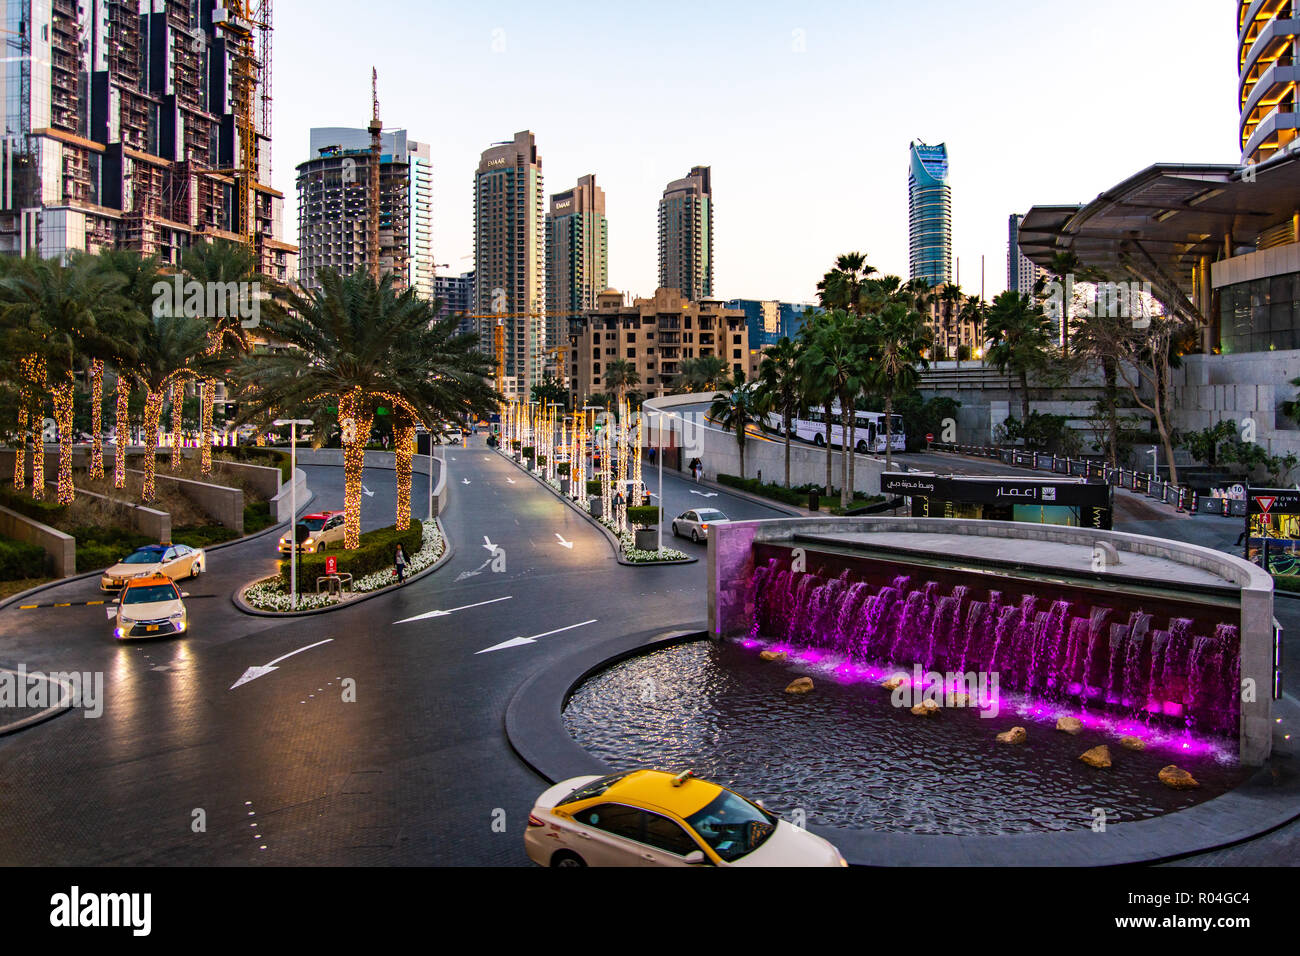 Dubai, Vereinigte Arabische Emirate - Februar 5, 2018: Dubai Mall busy Eingang mit viele Taxis und die Brunnen in der Dämmerung Stockfoto